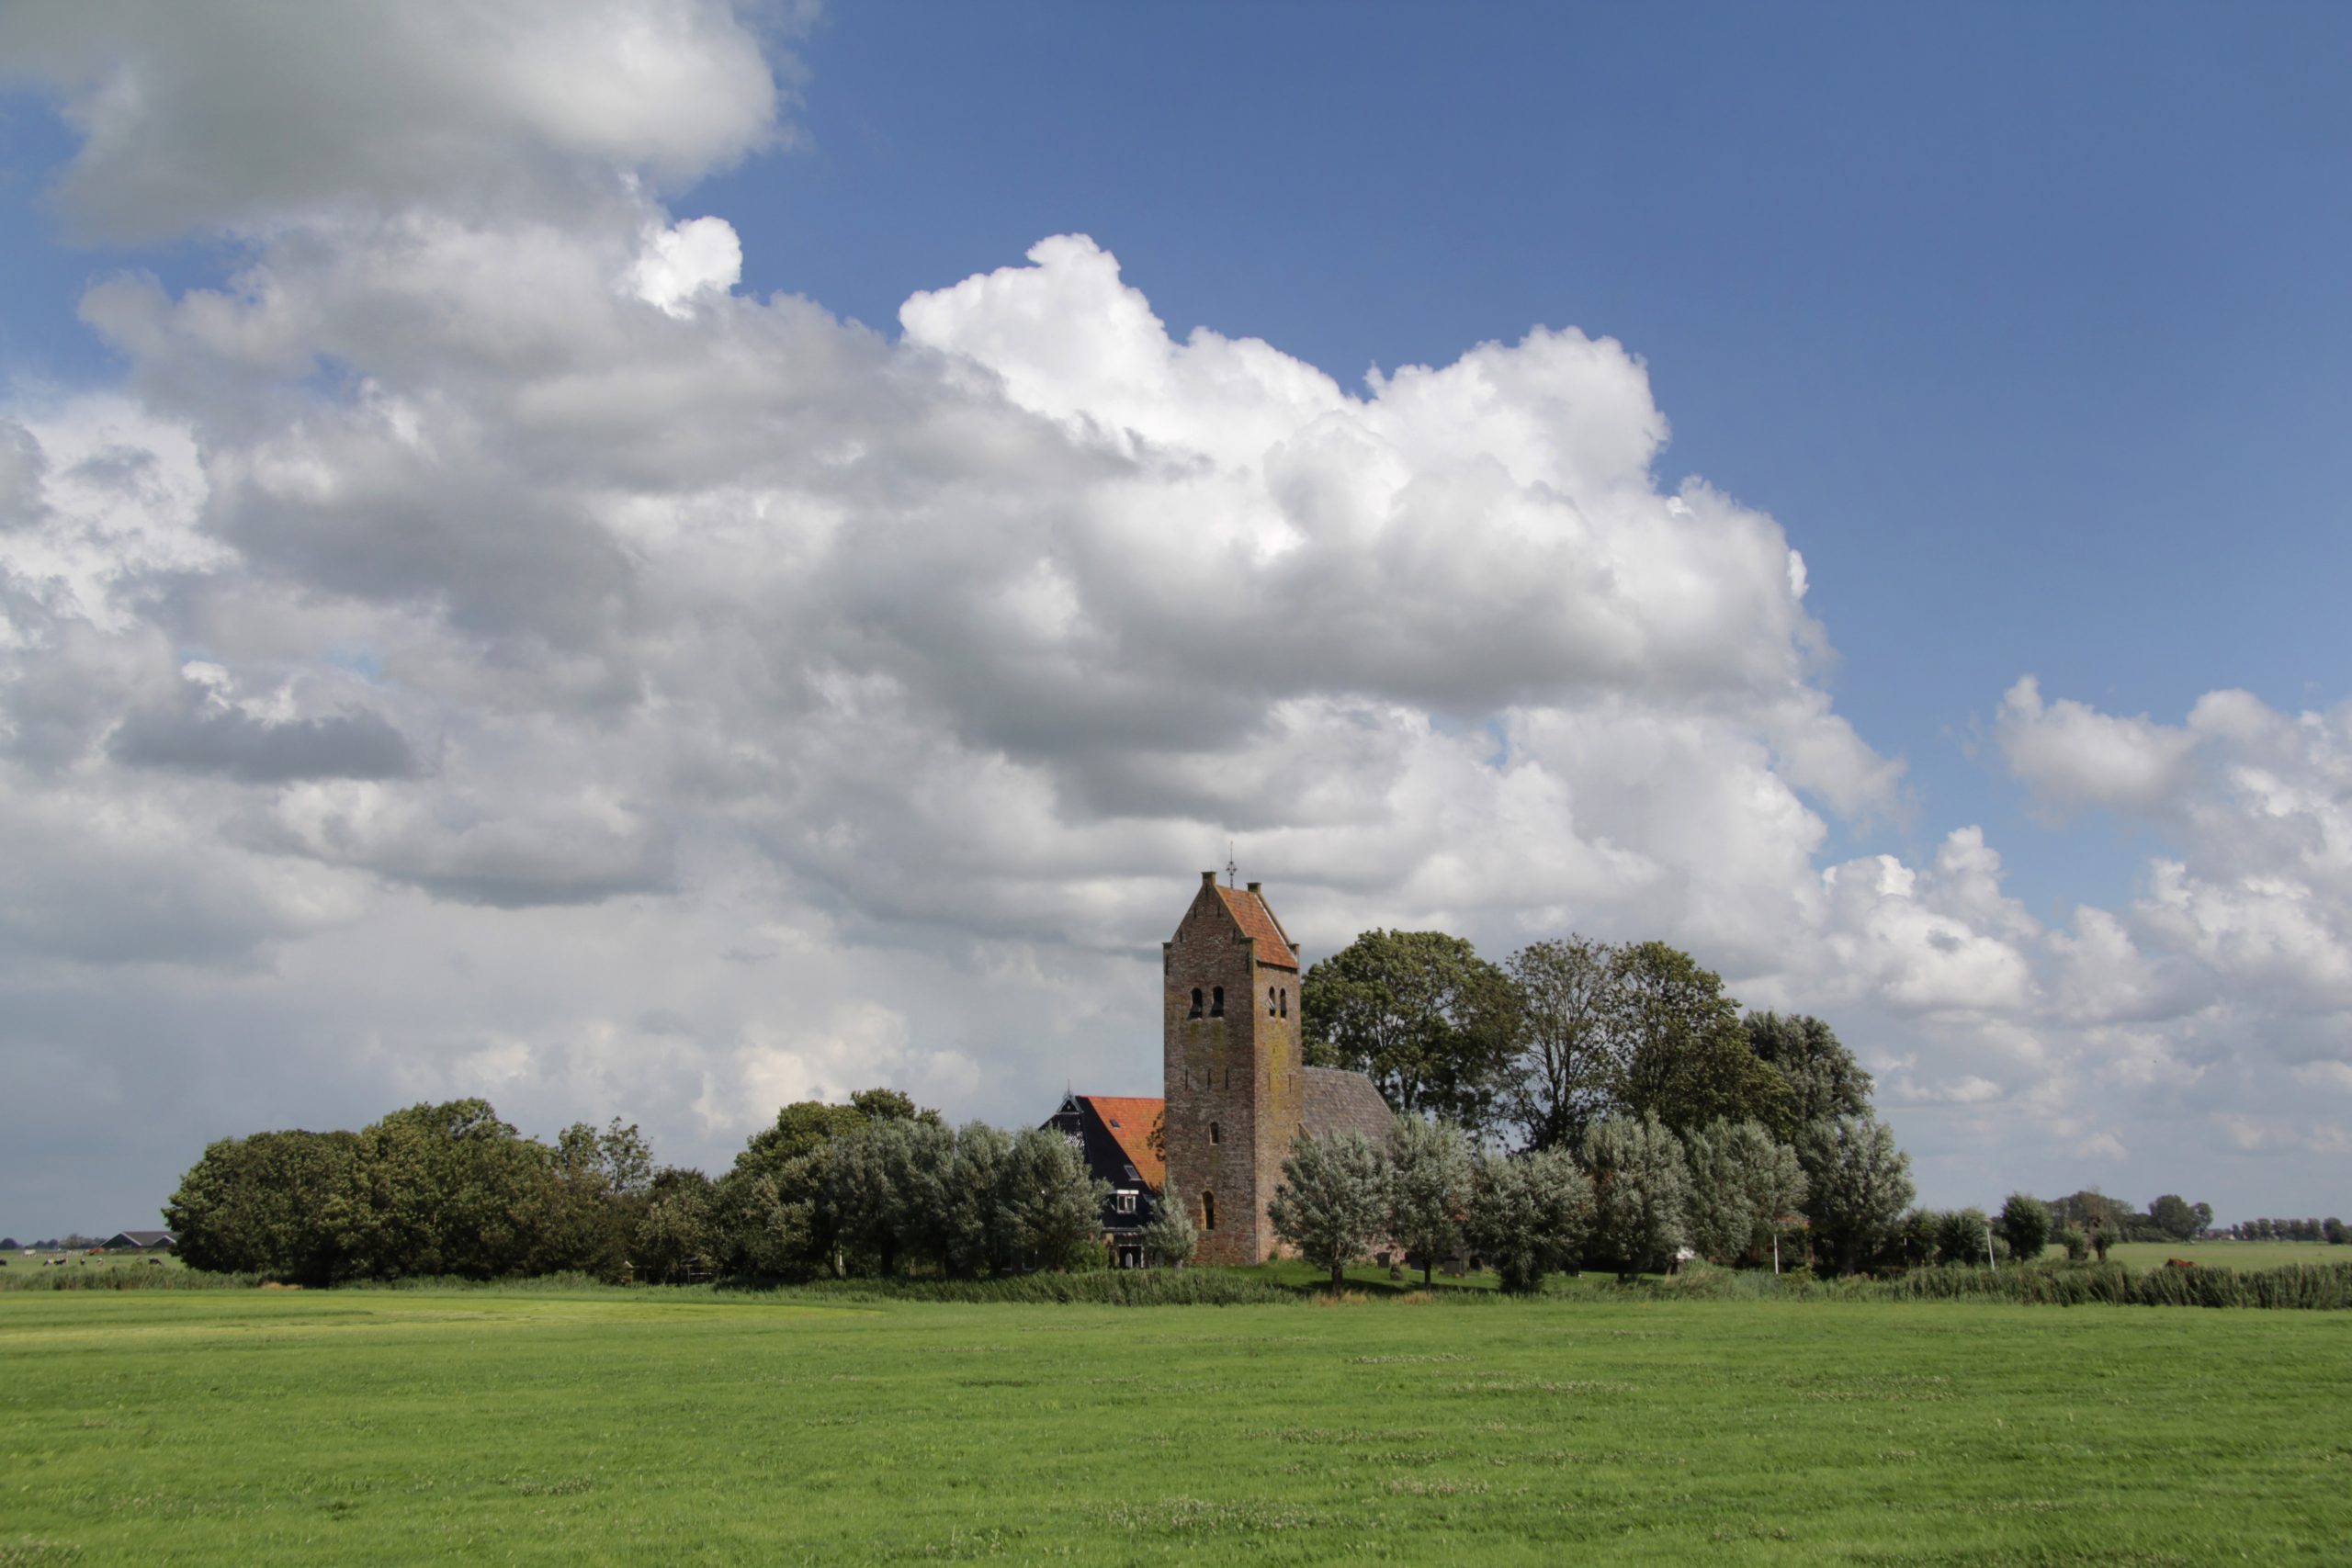 Lêzing oer ‘alde tsjerken’ in Nationaal Landschap Zuidwest Fryslân